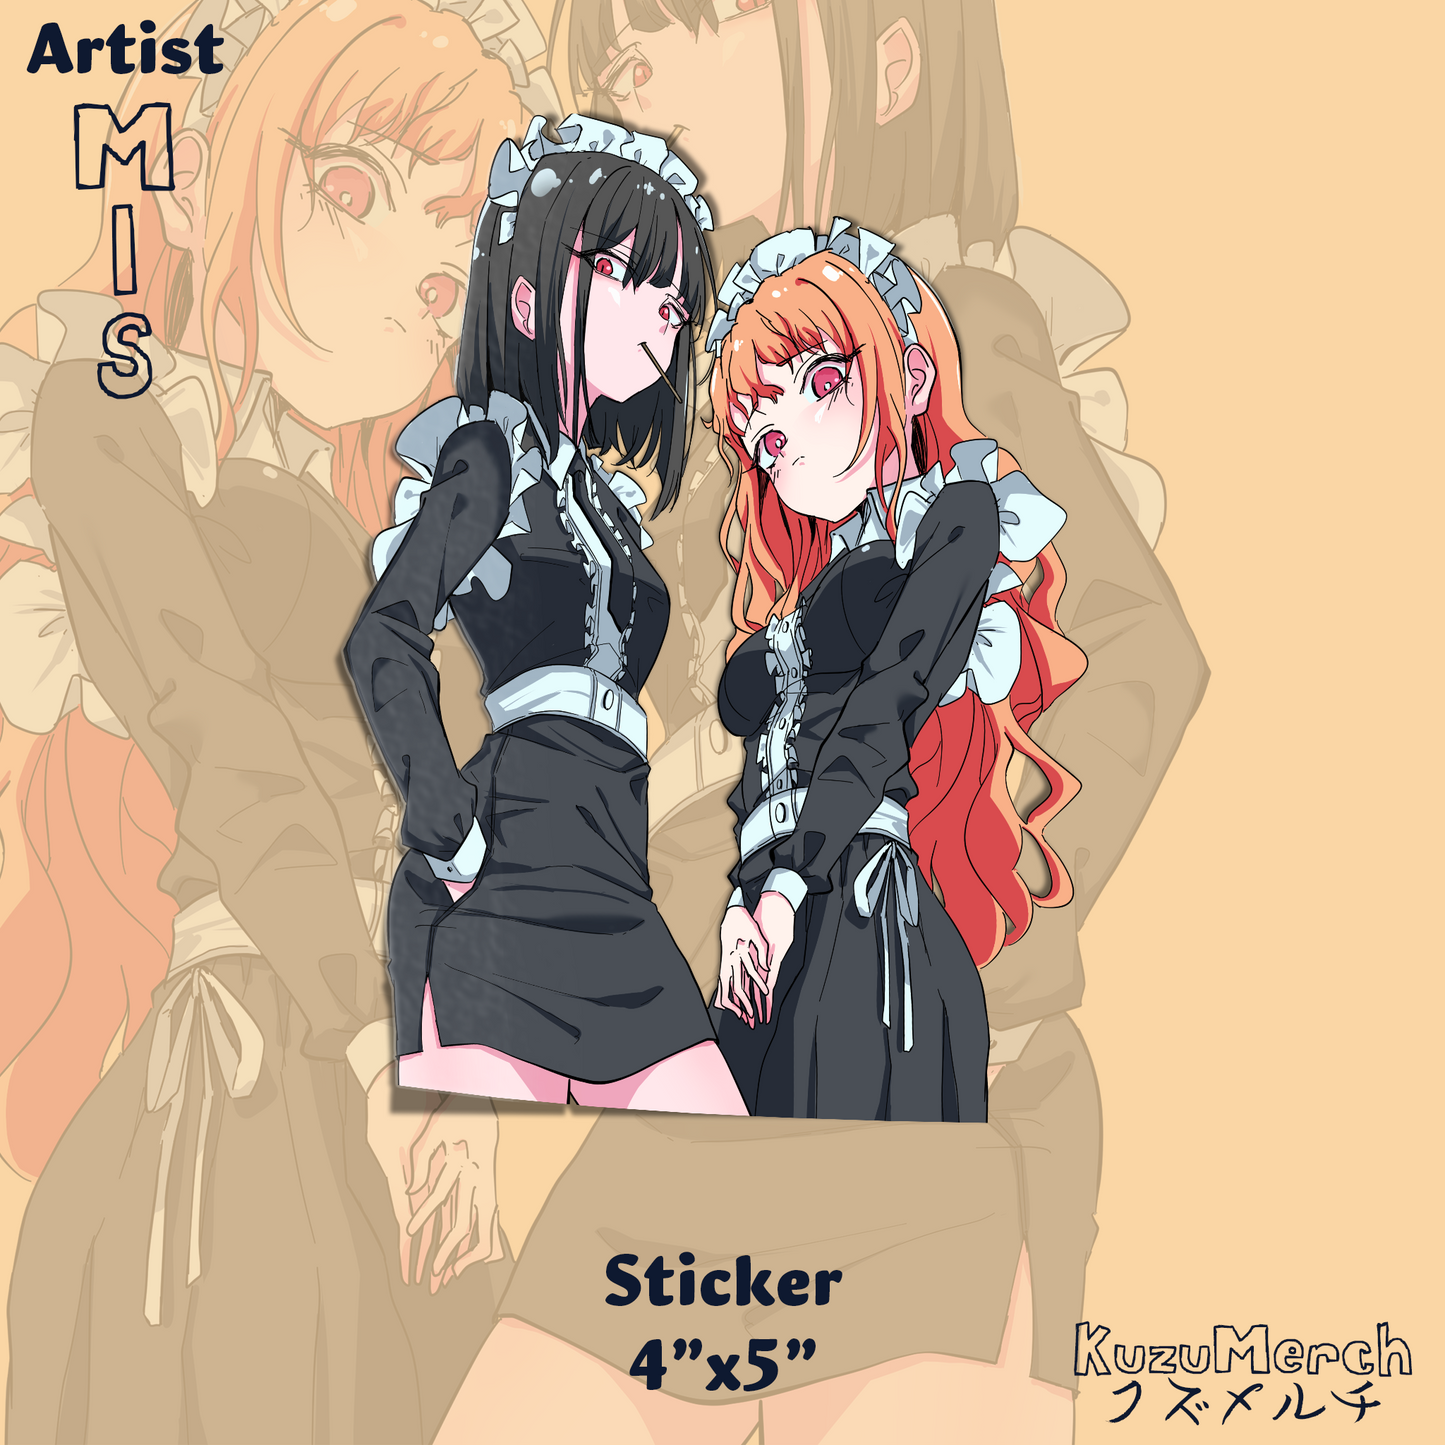 2 Maids Sticker